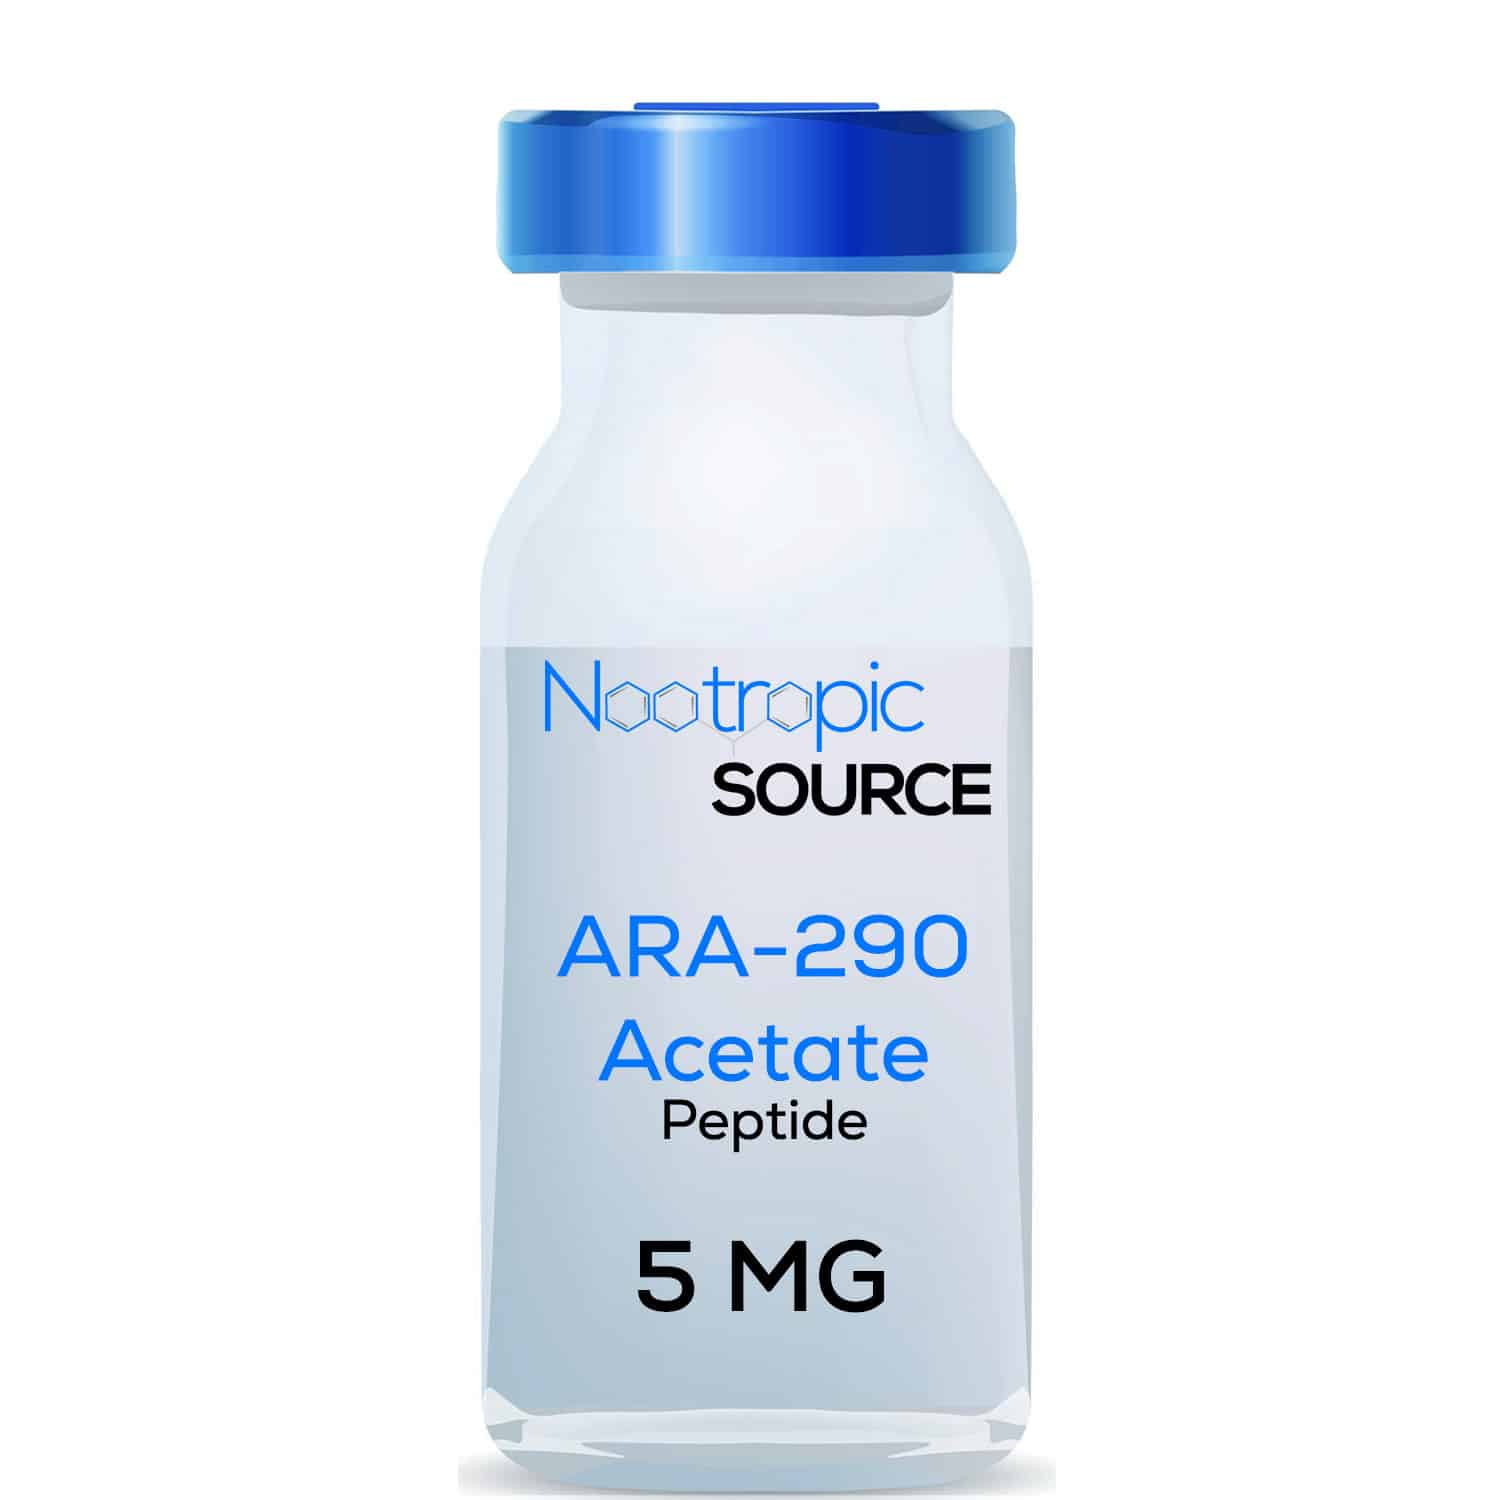 ARA-290 Acetate